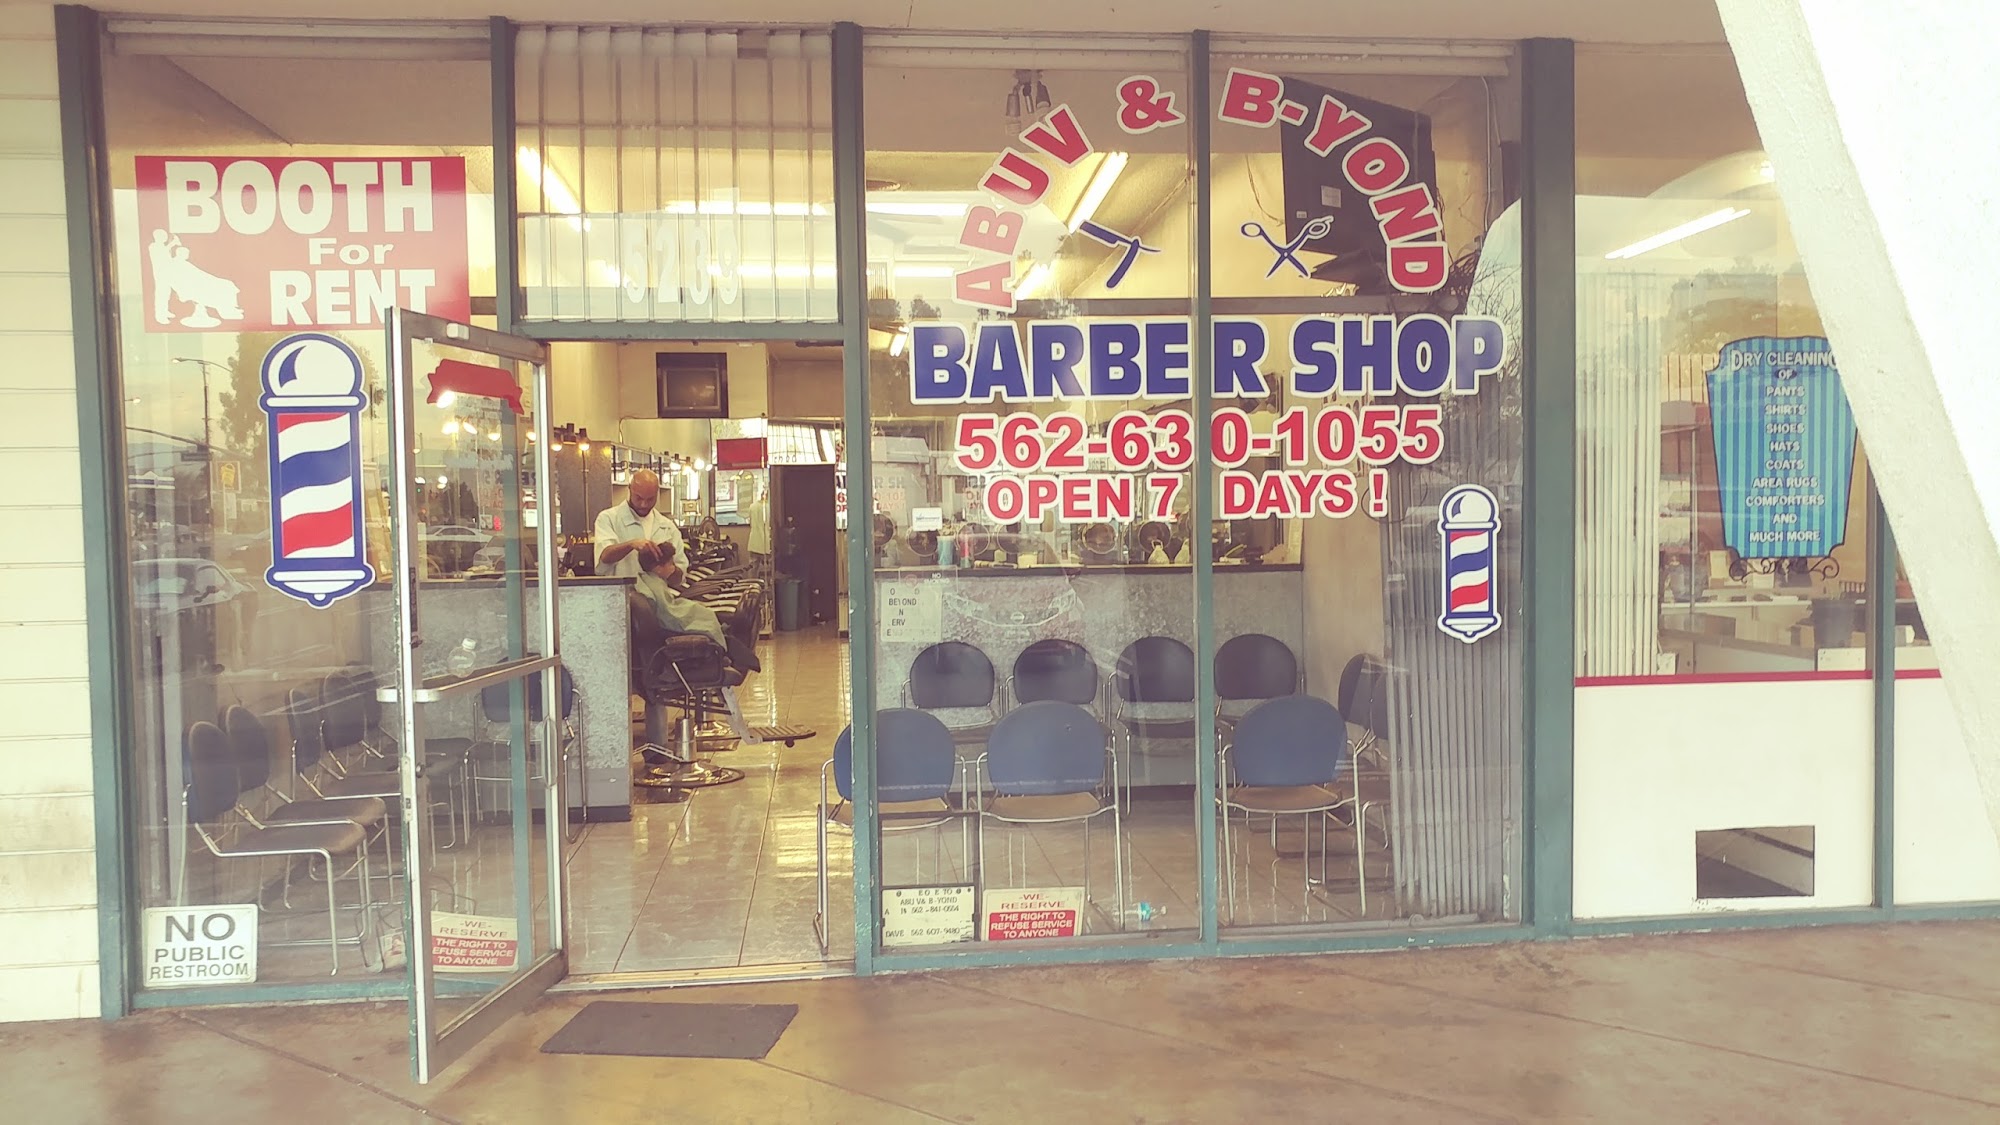 Above & Beyond Barber Shop